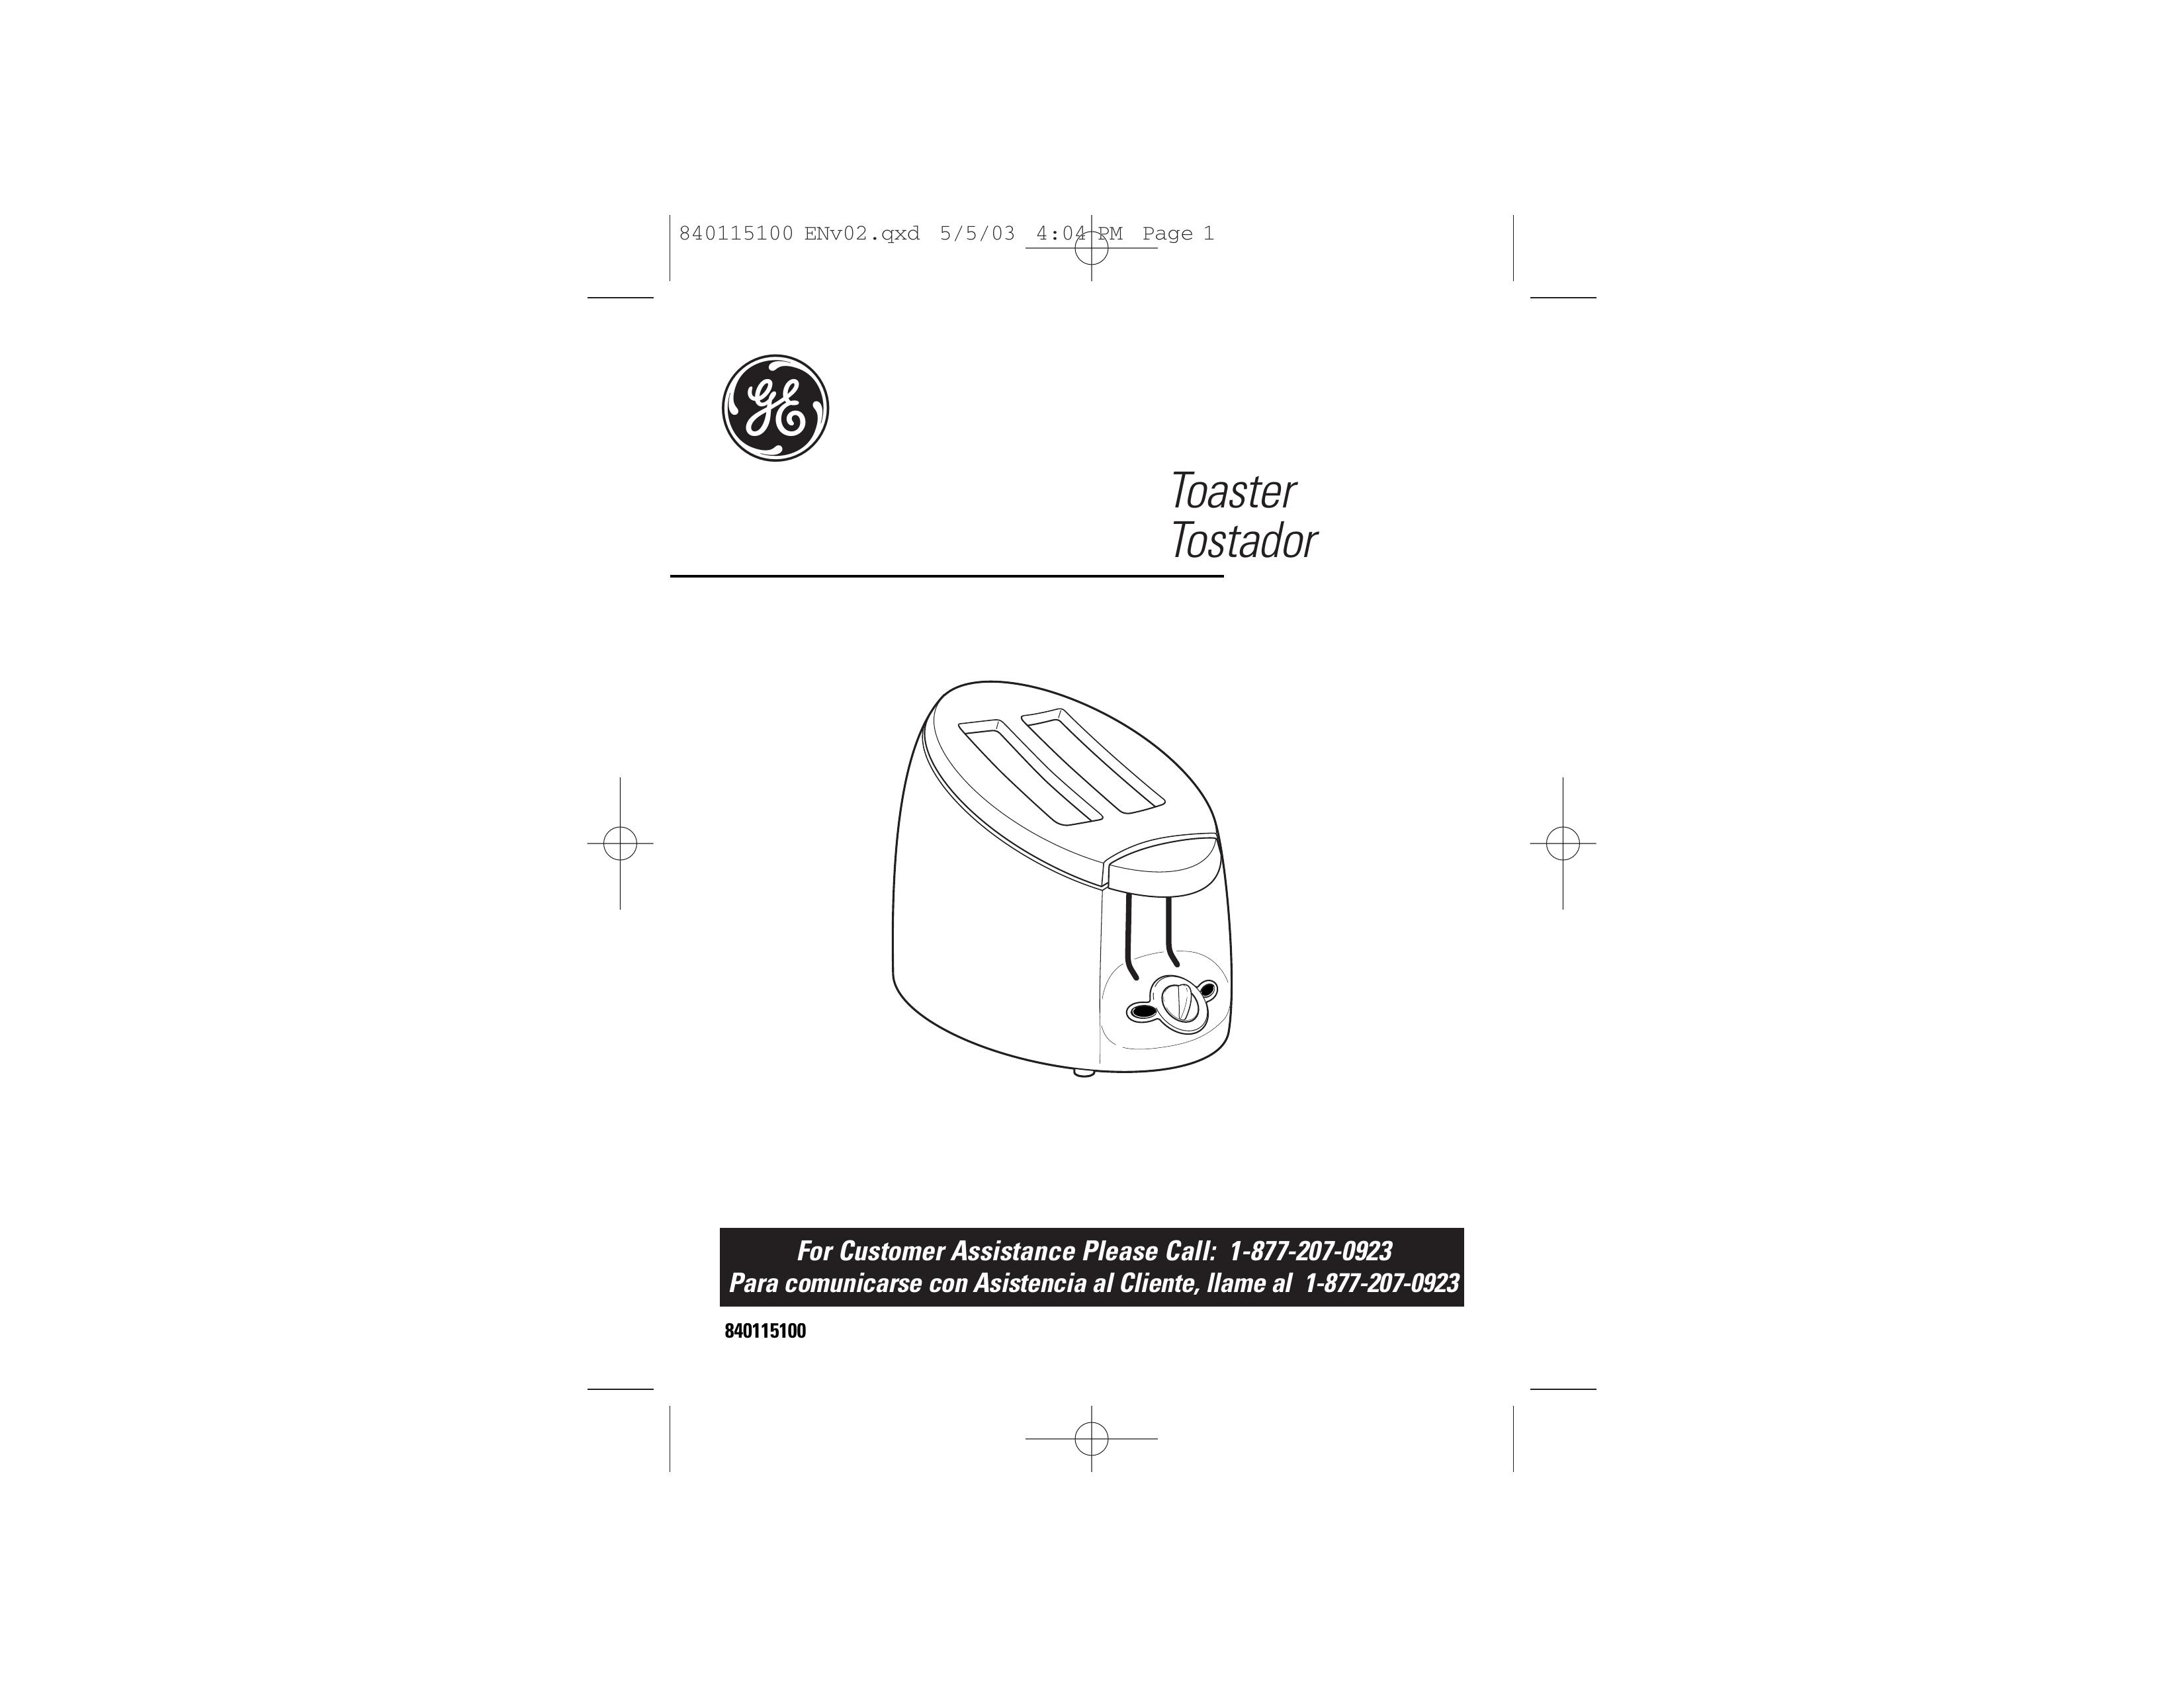 GE 840115100 Toaster User Manual